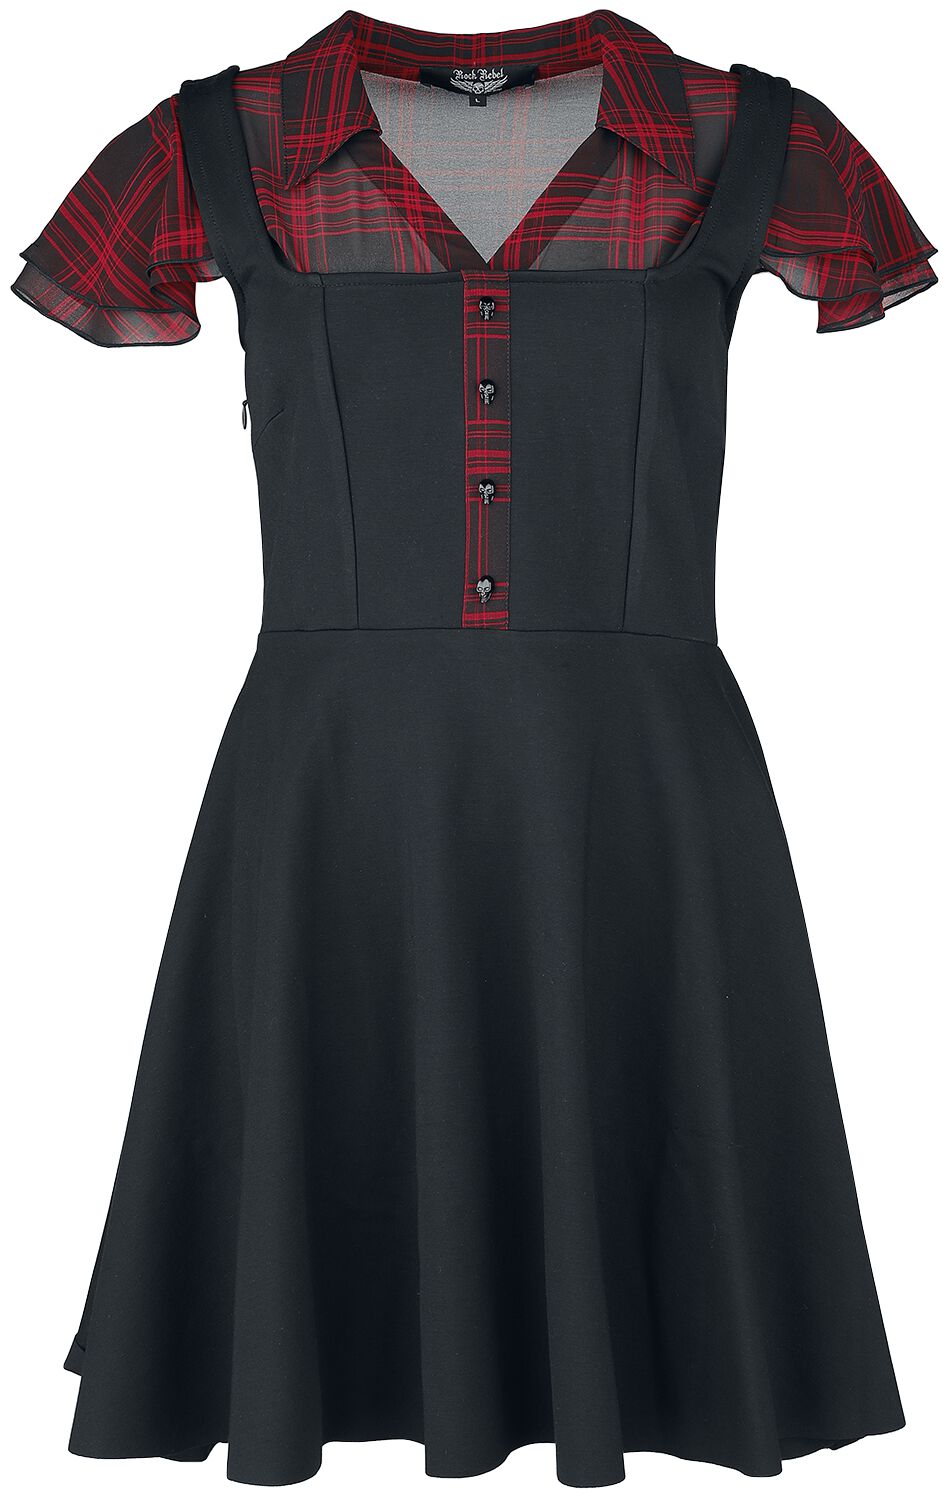 Rock Rebel by EMP Layer-Look Kleid mit karierter Bluse Kurzes Kleid rot schwarz